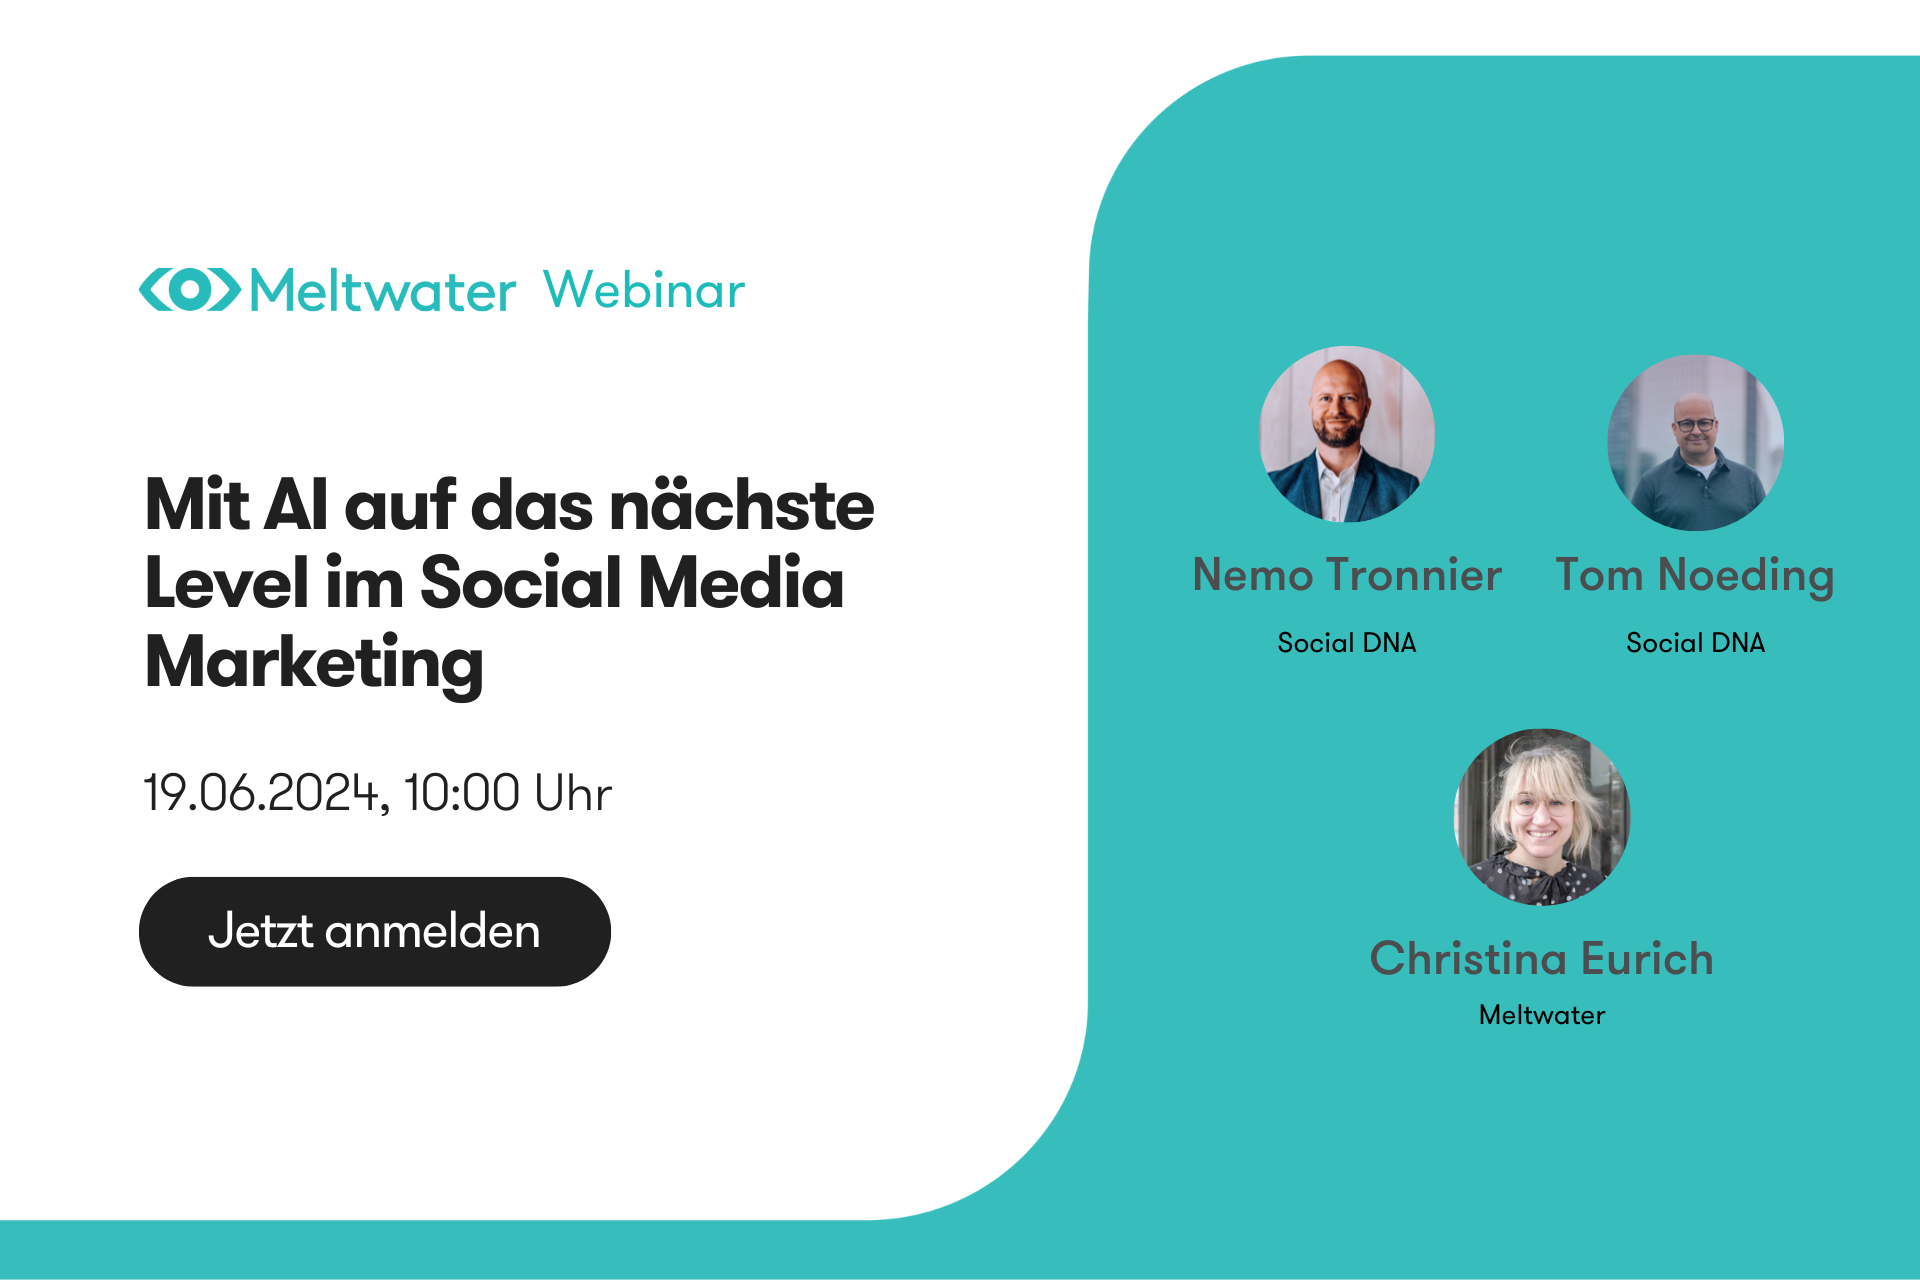 AI und Social Media Marketing Webinar mit Nemo Tronnier und Tom Noeding und Christina Eurich